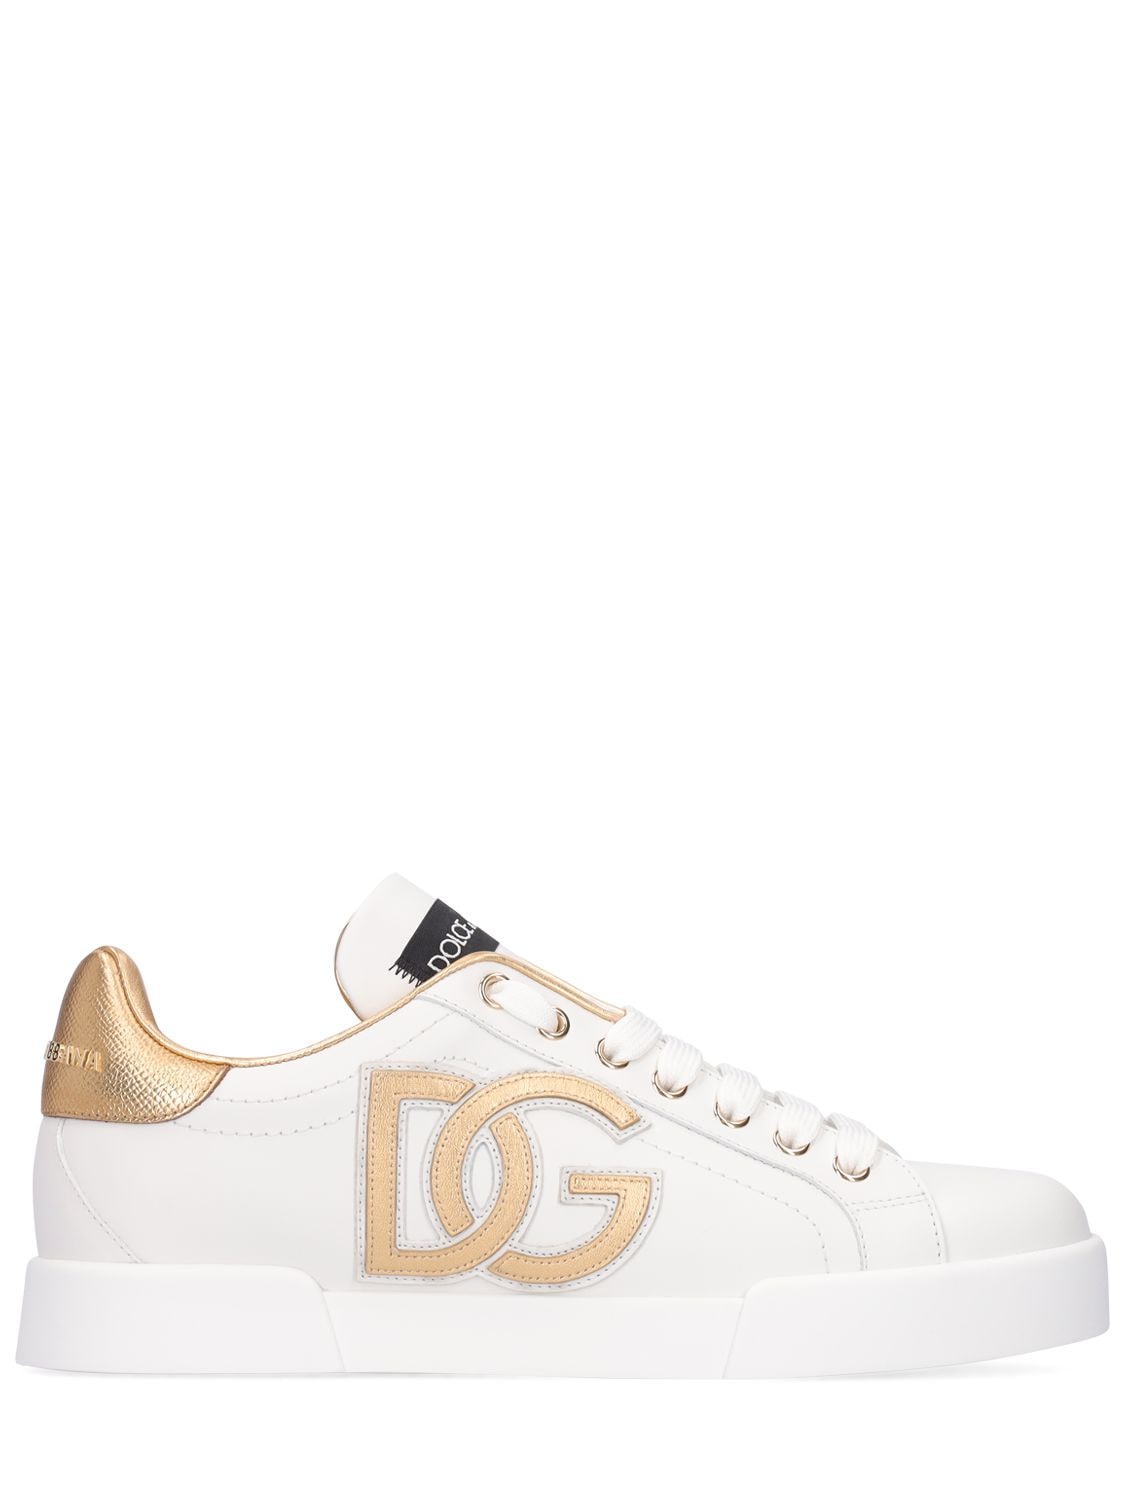 Dolce & Gabbana 20mm Portofino Leather Sneakers In White,gold